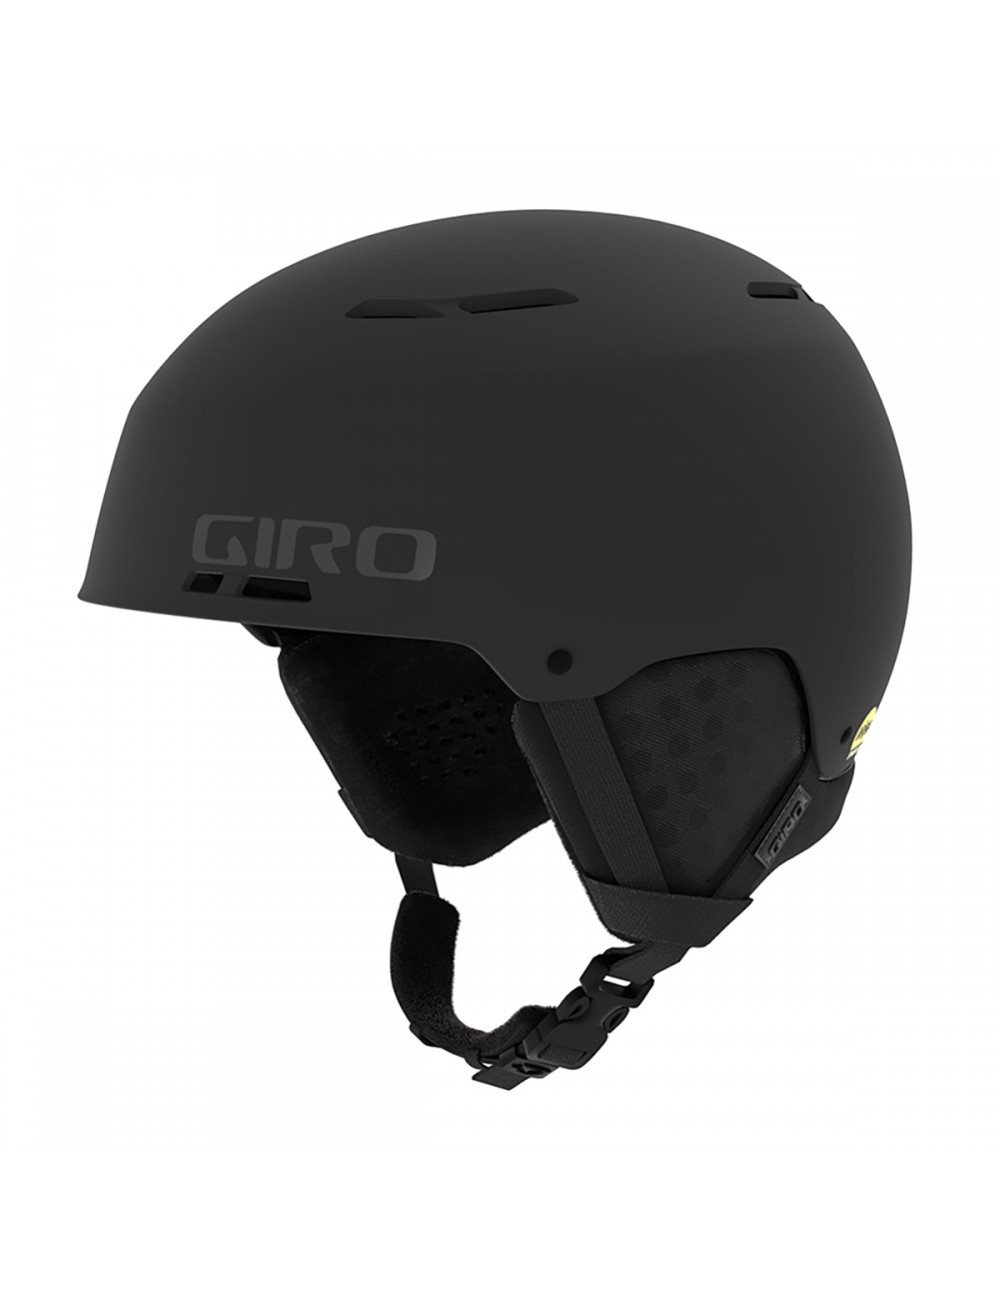 Giro Emerge Spherical Mips Helmet - Matte Black